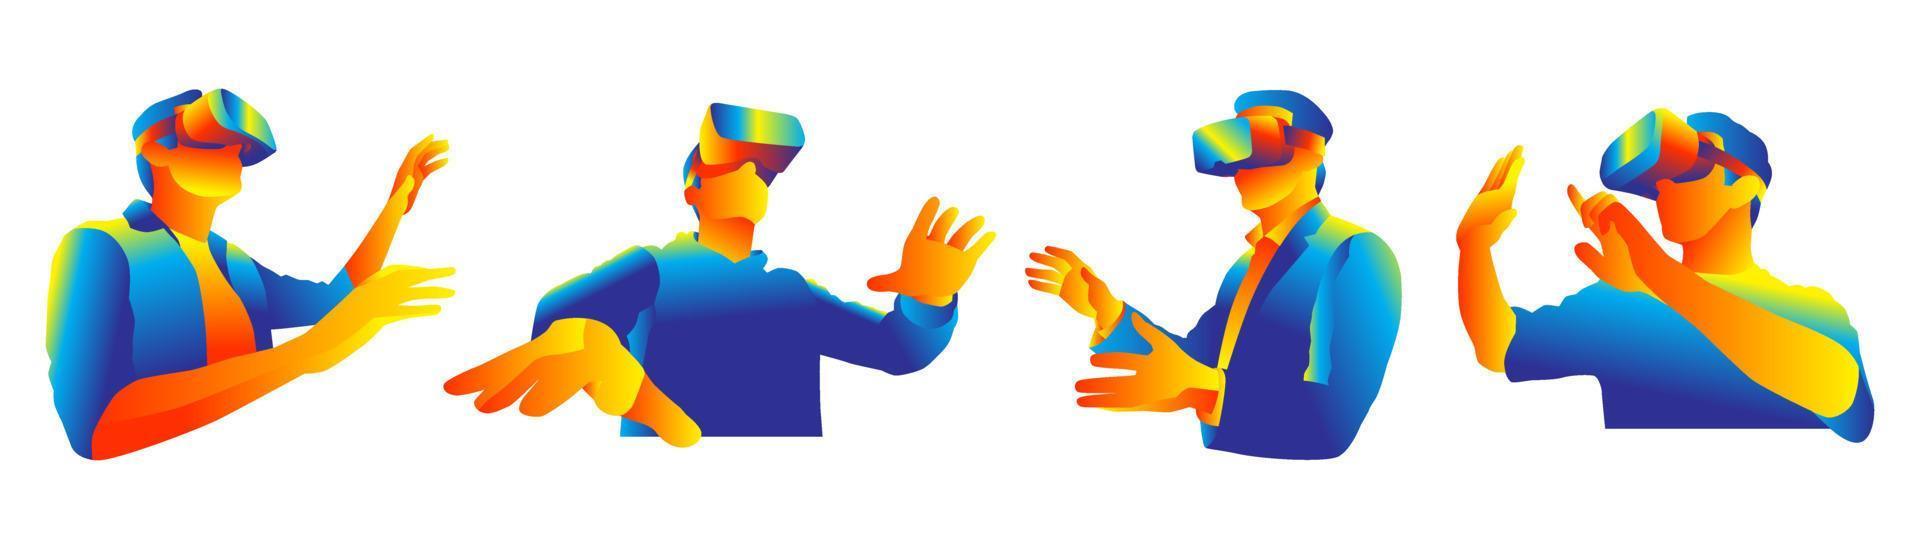 VR-Headset, das die Objekte in der virtuellen Realität betrachtet vektor